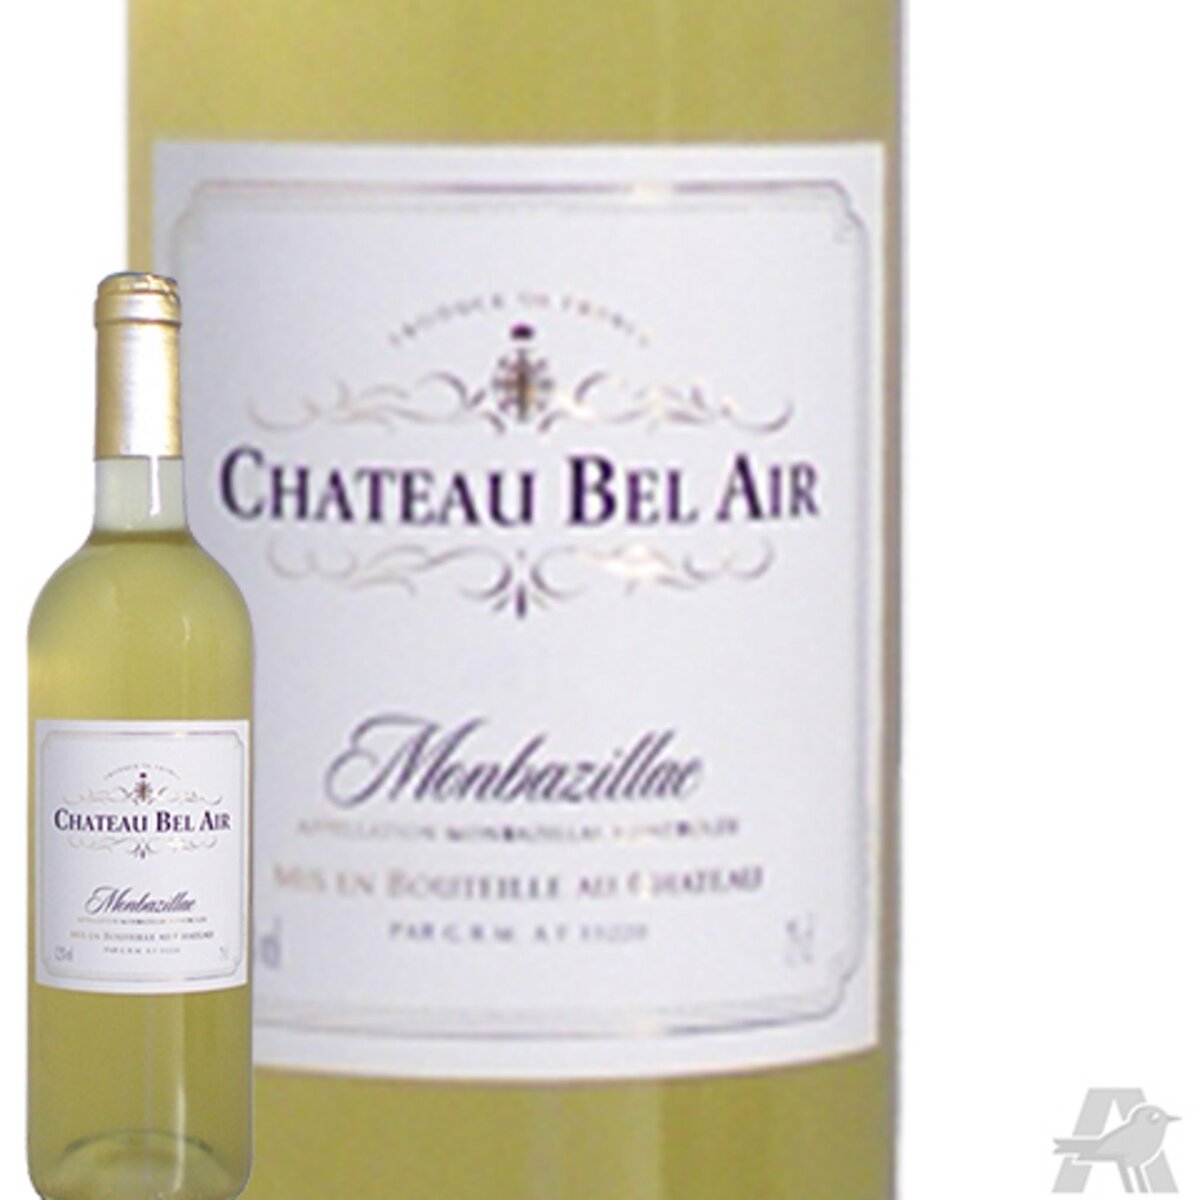 Château Bel Air Monbazillac Blanc 2012